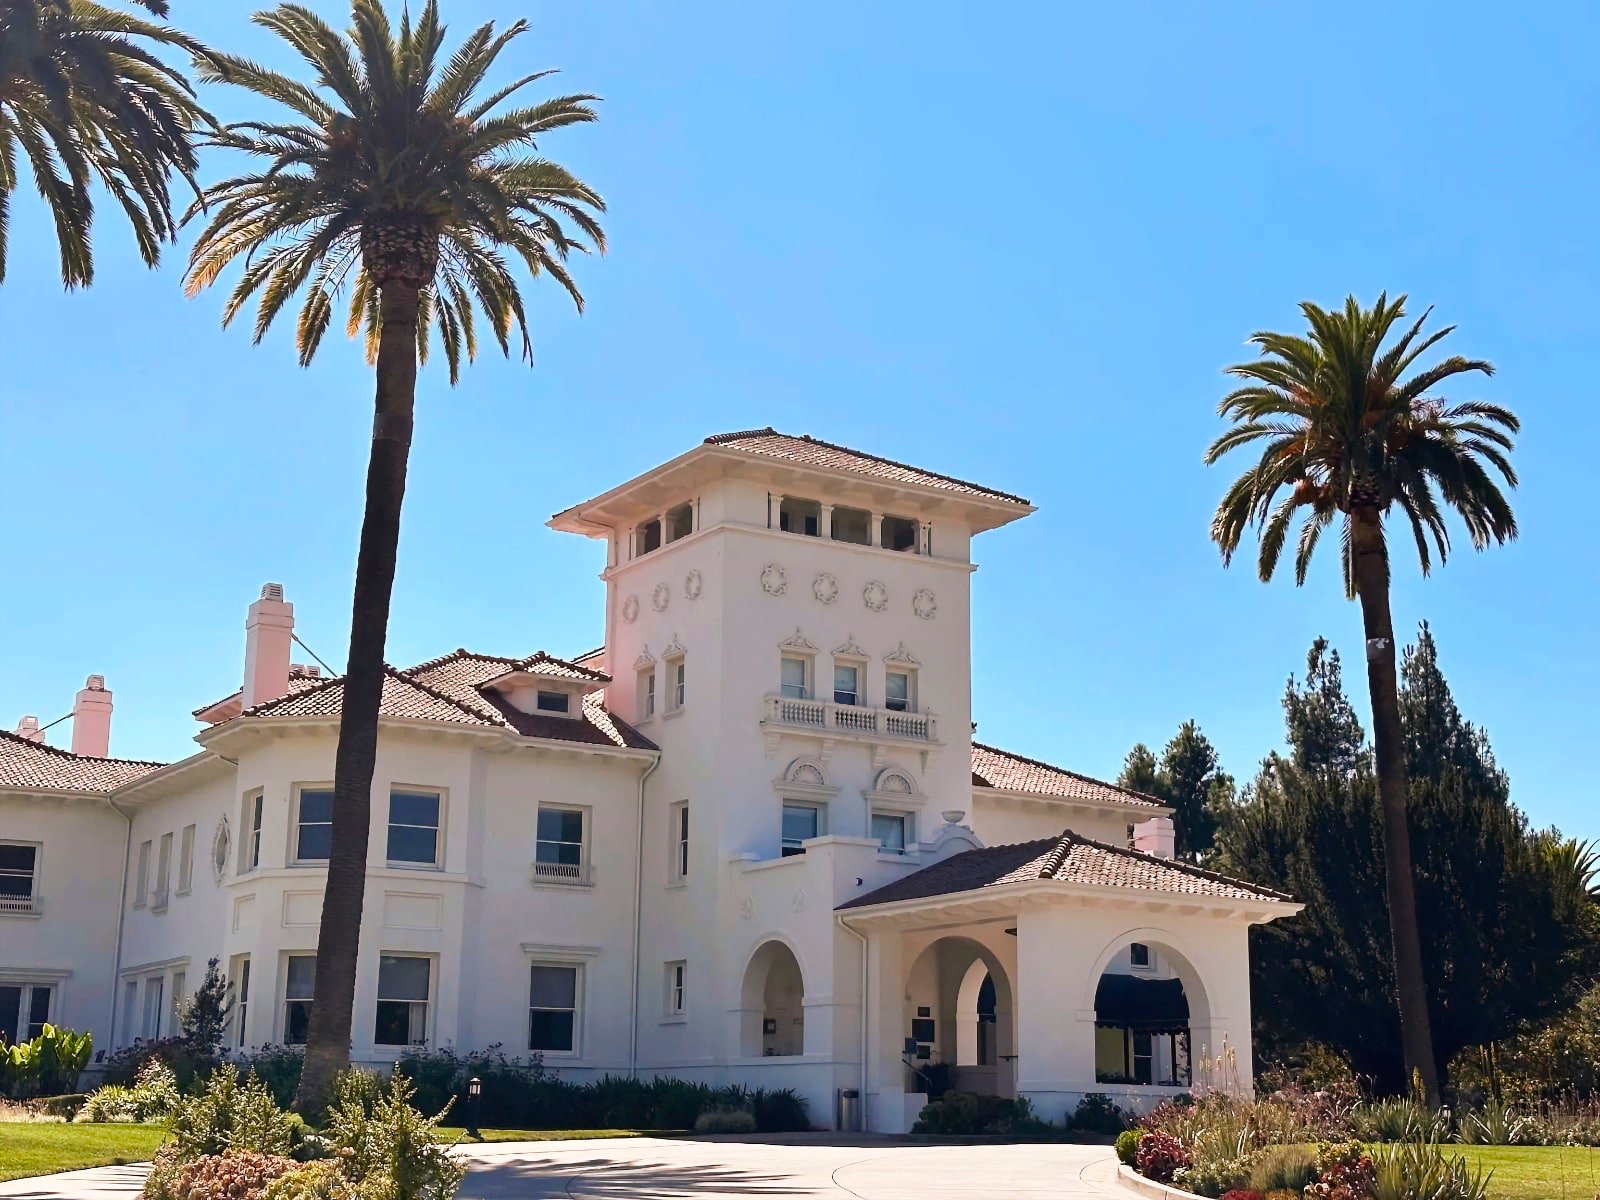 Hayes Mansion in San Jose